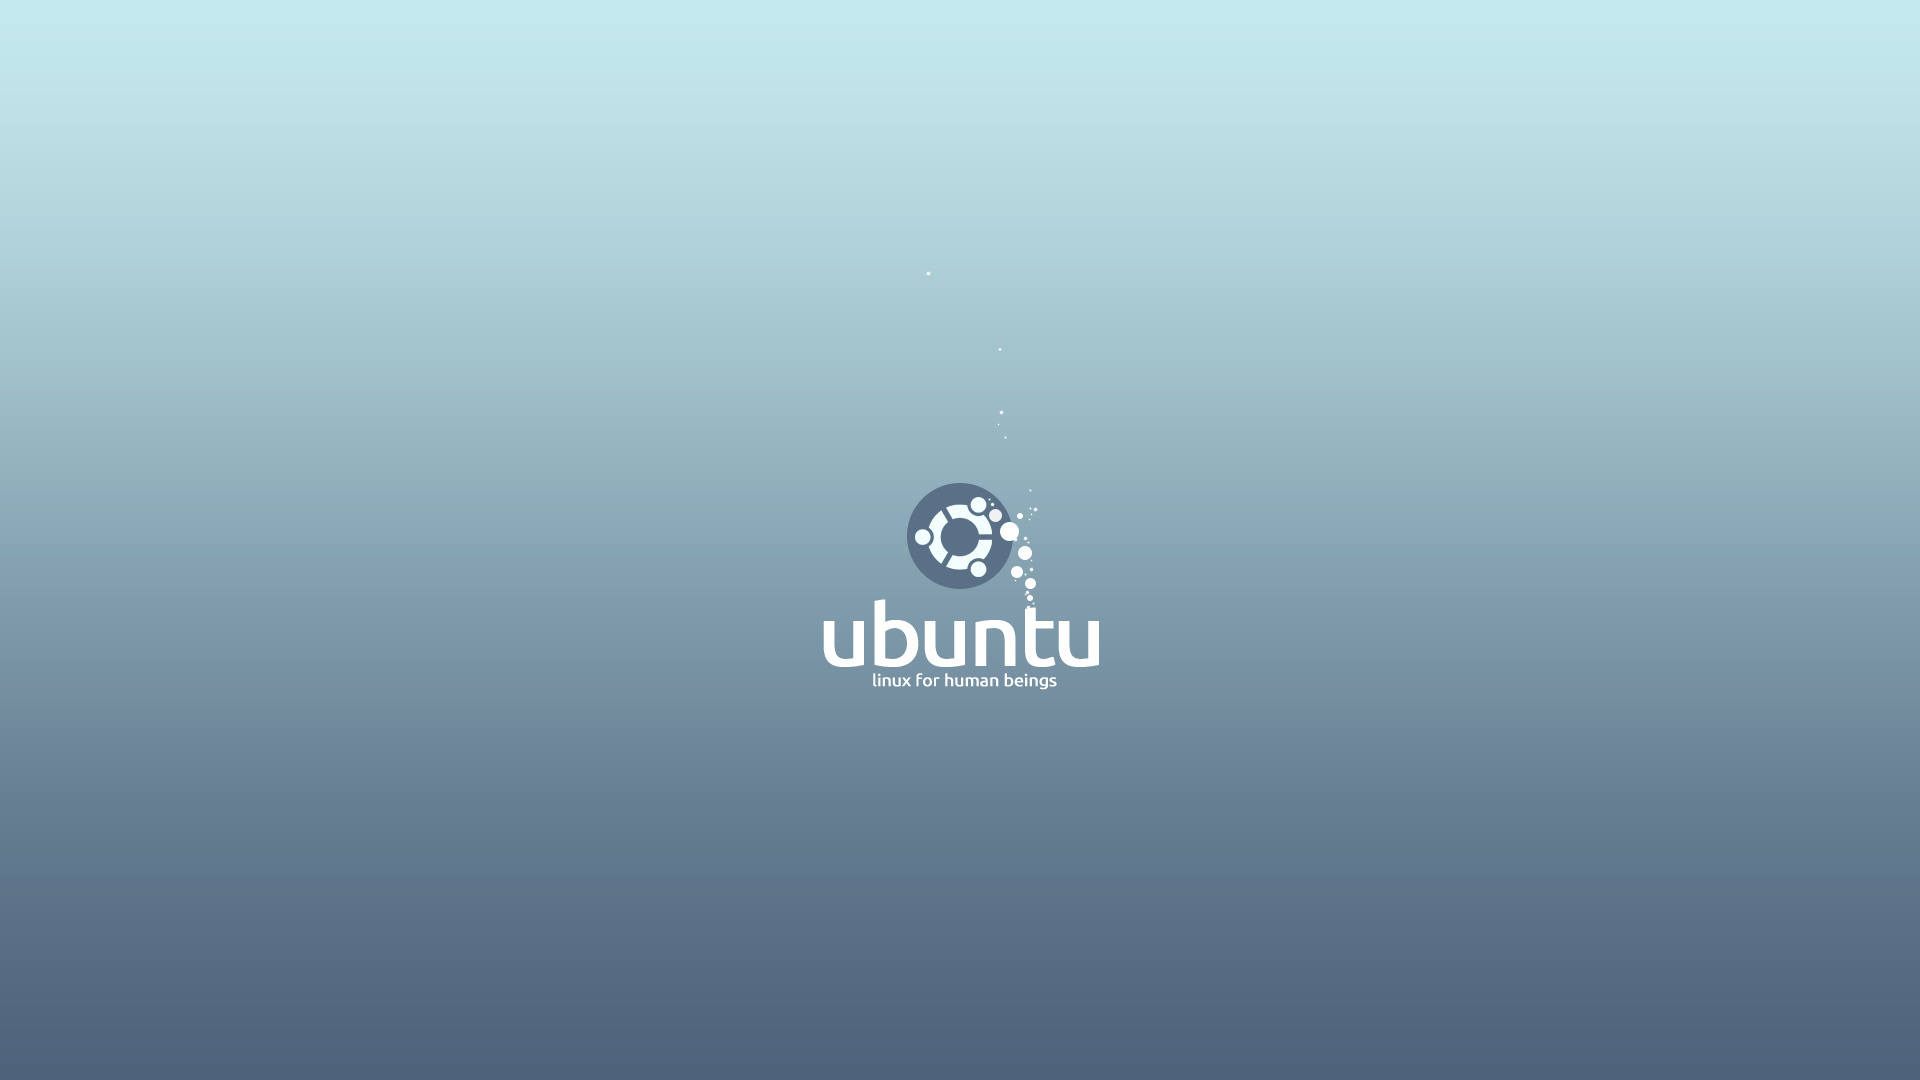 3d обои Ubuntu / Убунту linux for human beings  бренд # 20939